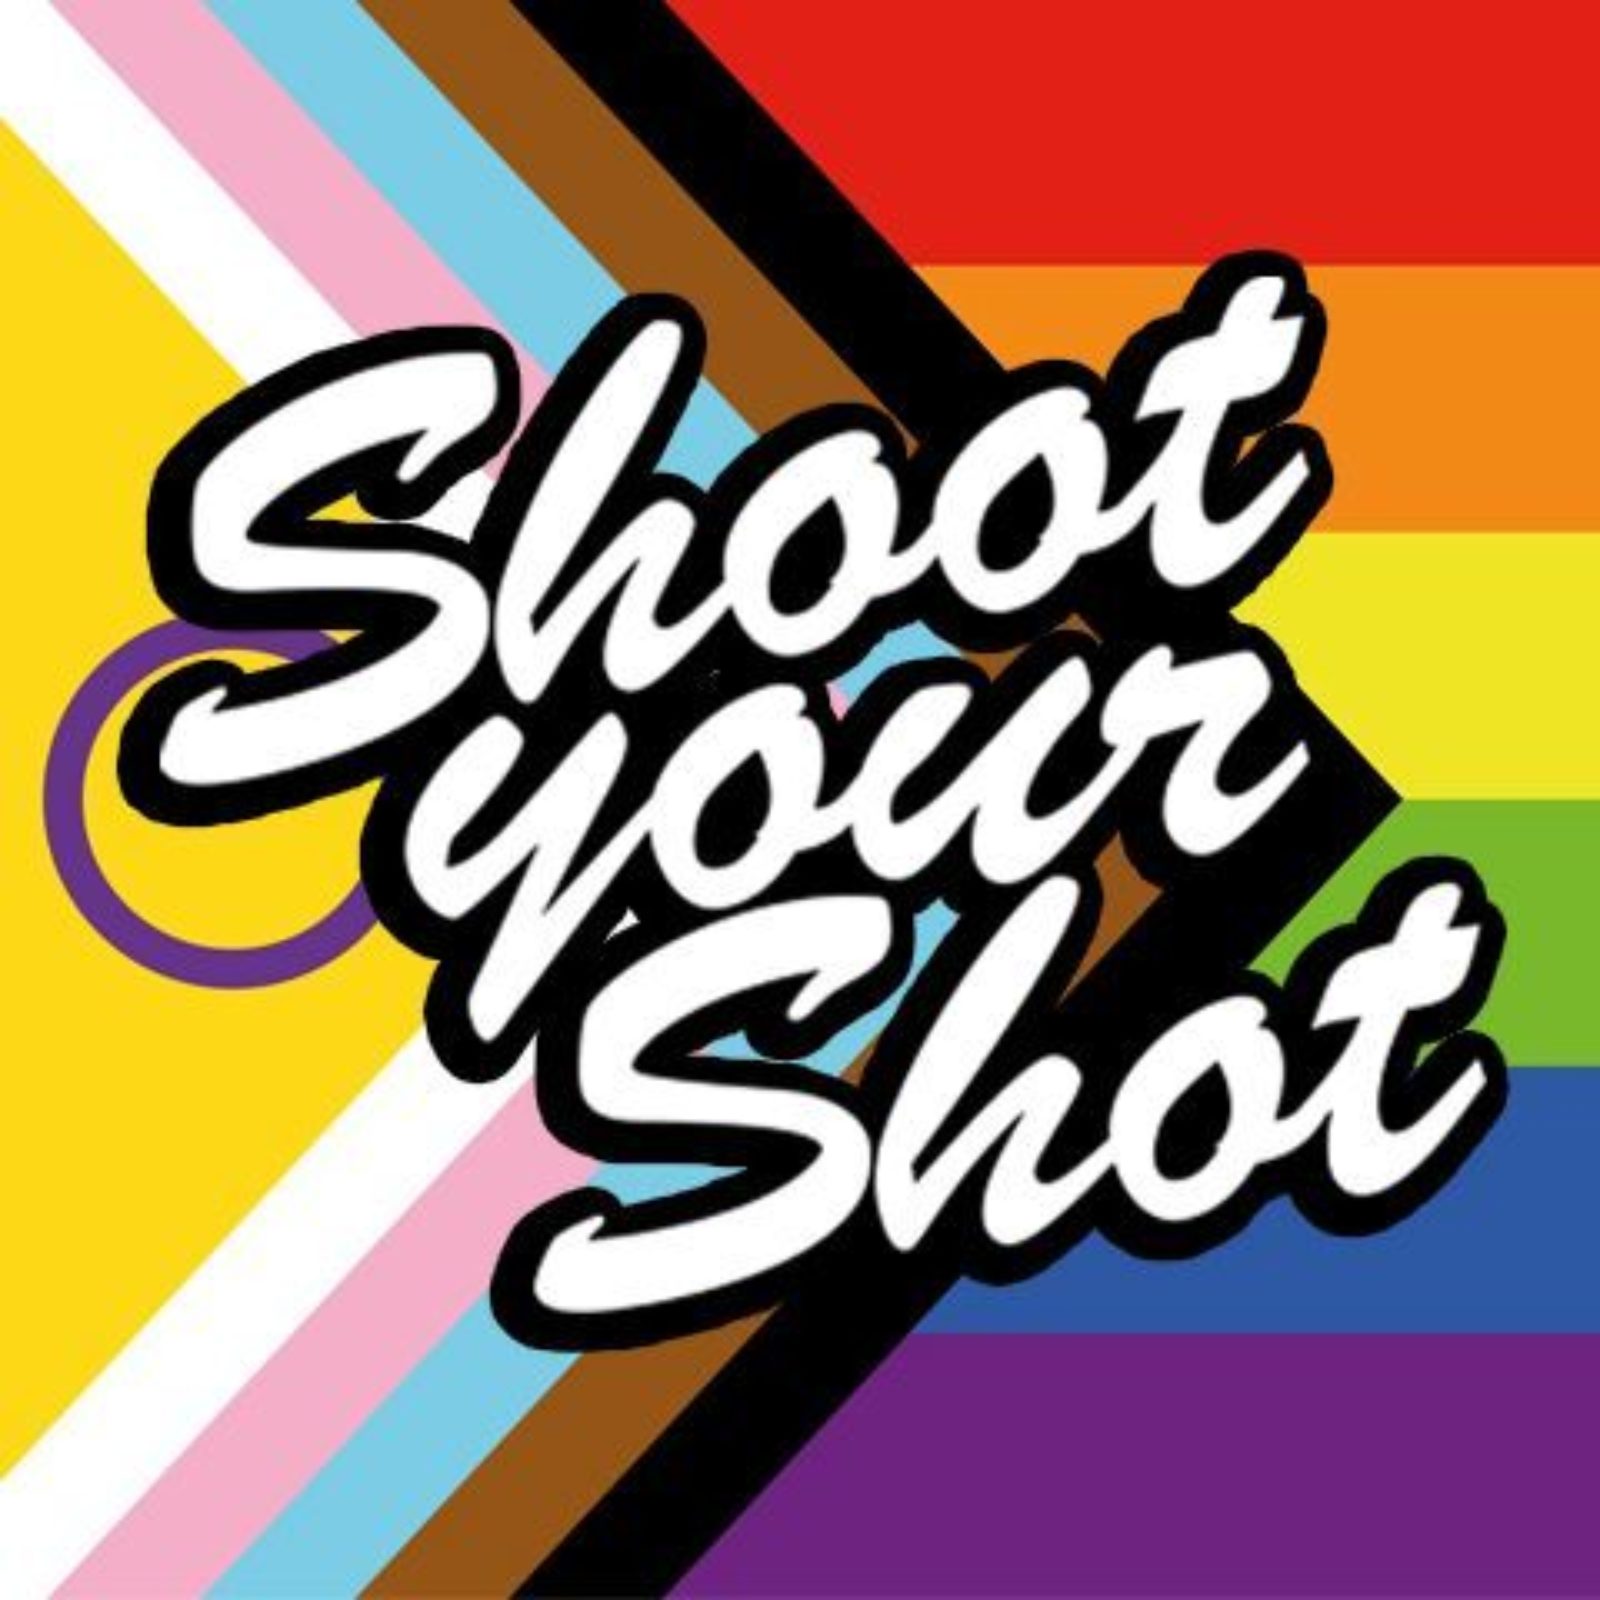 SHOOT YOUR SHOT